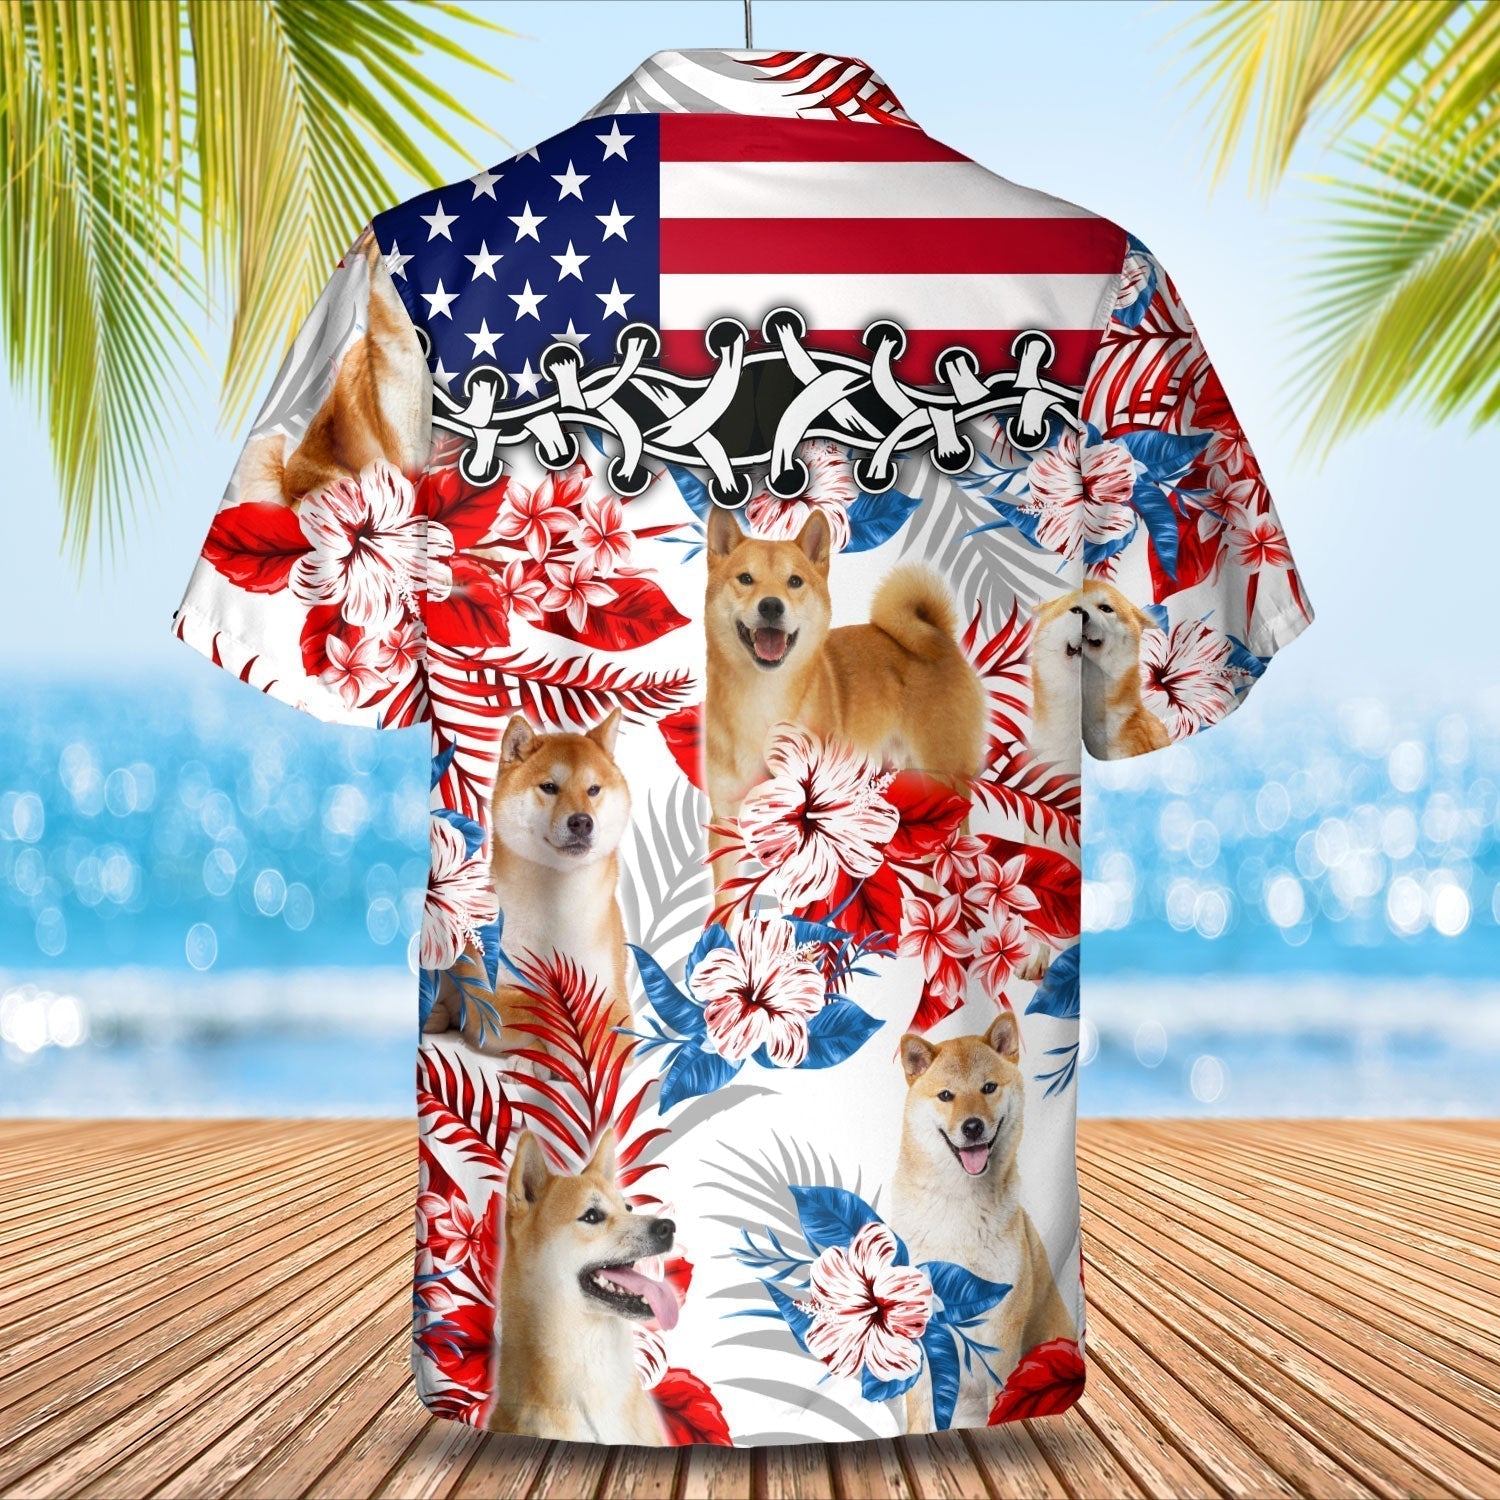 Shiba Inu Hawaiian Shirt - Gift for Summer/ Summer aloha shirt/ Hawaiian shirt for Men and women